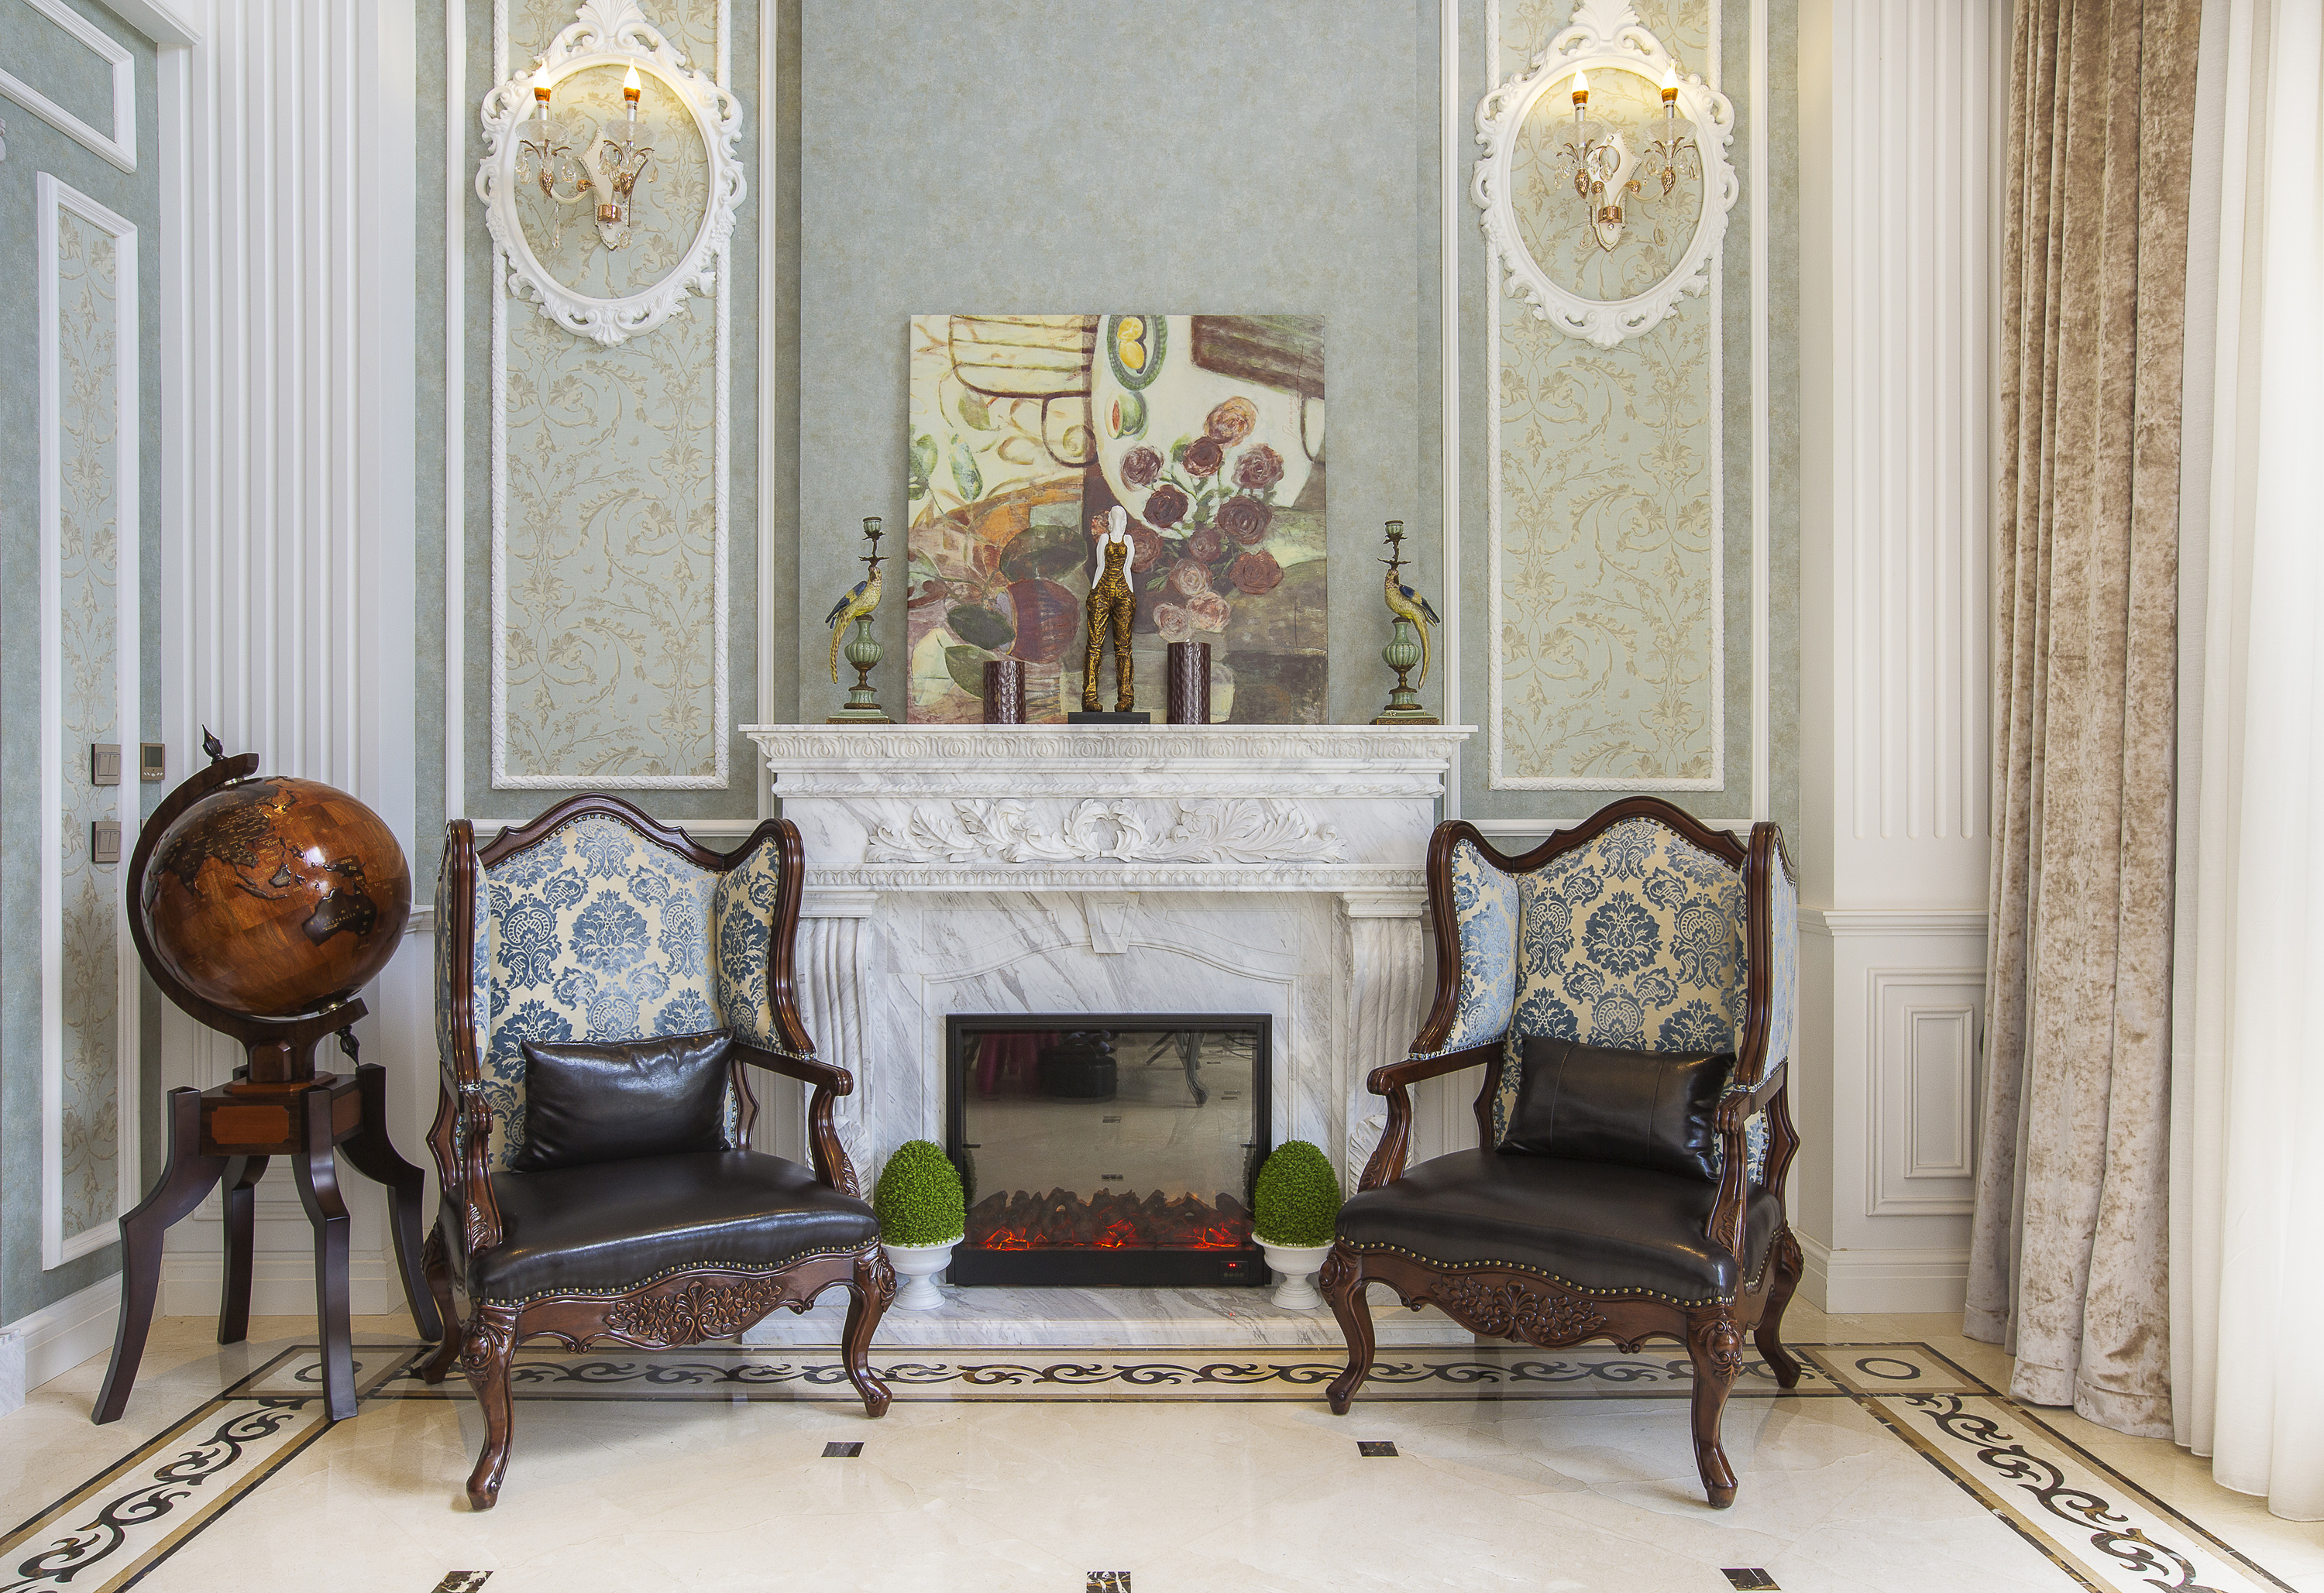 简约 欧式 原创国际 墅装 全案设计 客厅图片来自原创国际别墅装饰在东方太阳城的分享